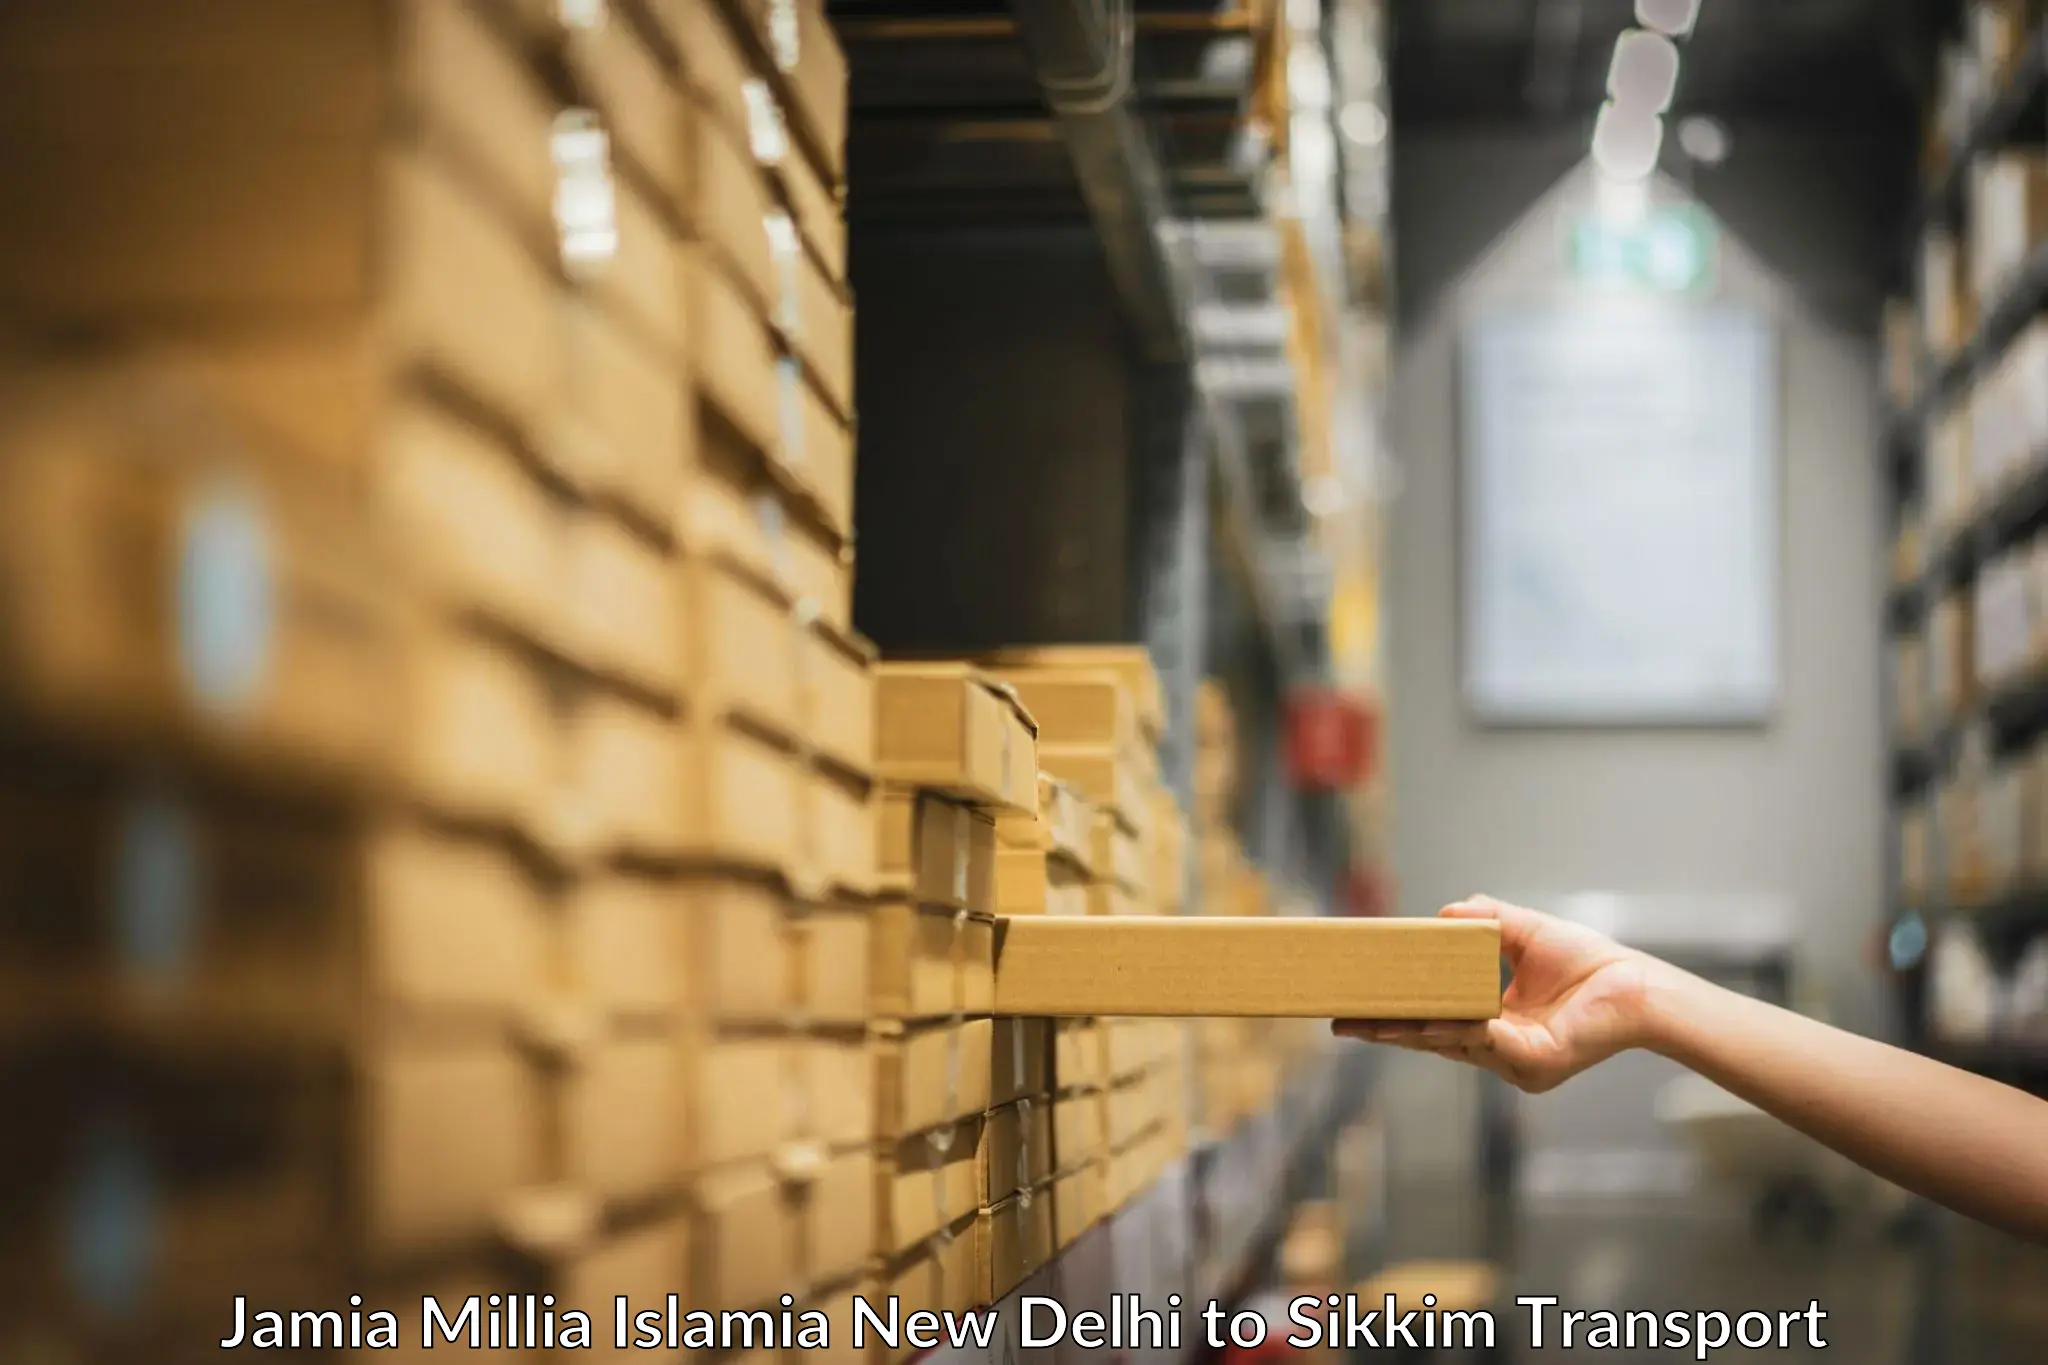 Lorry transport service Jamia Millia Islamia New Delhi to South Sikkim